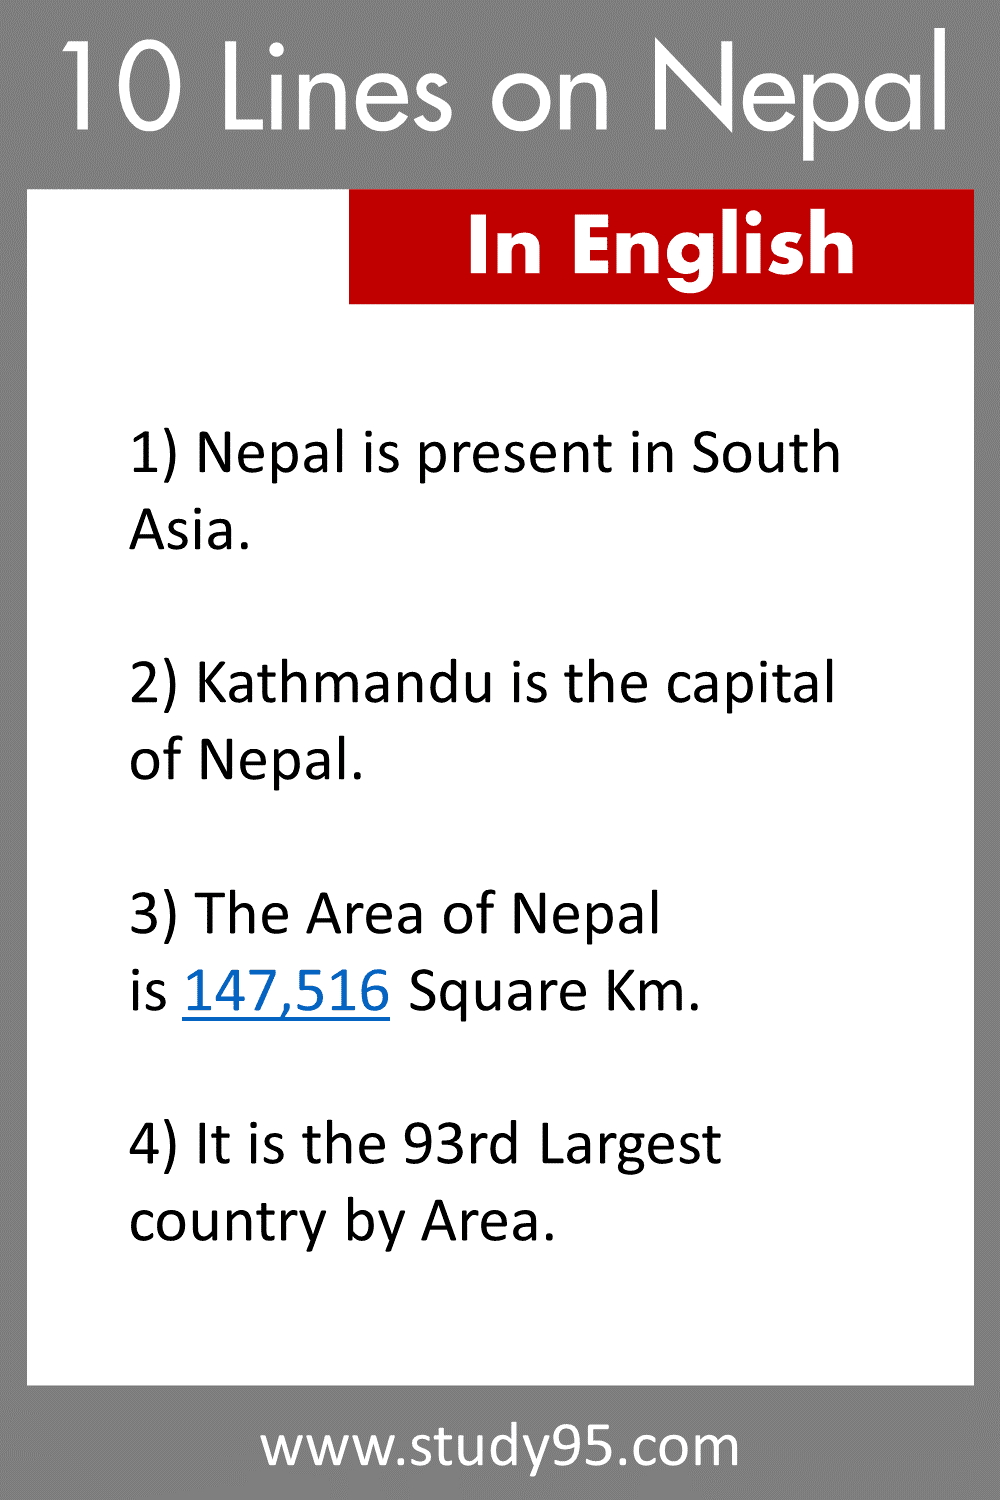 10 Lines on Nepal